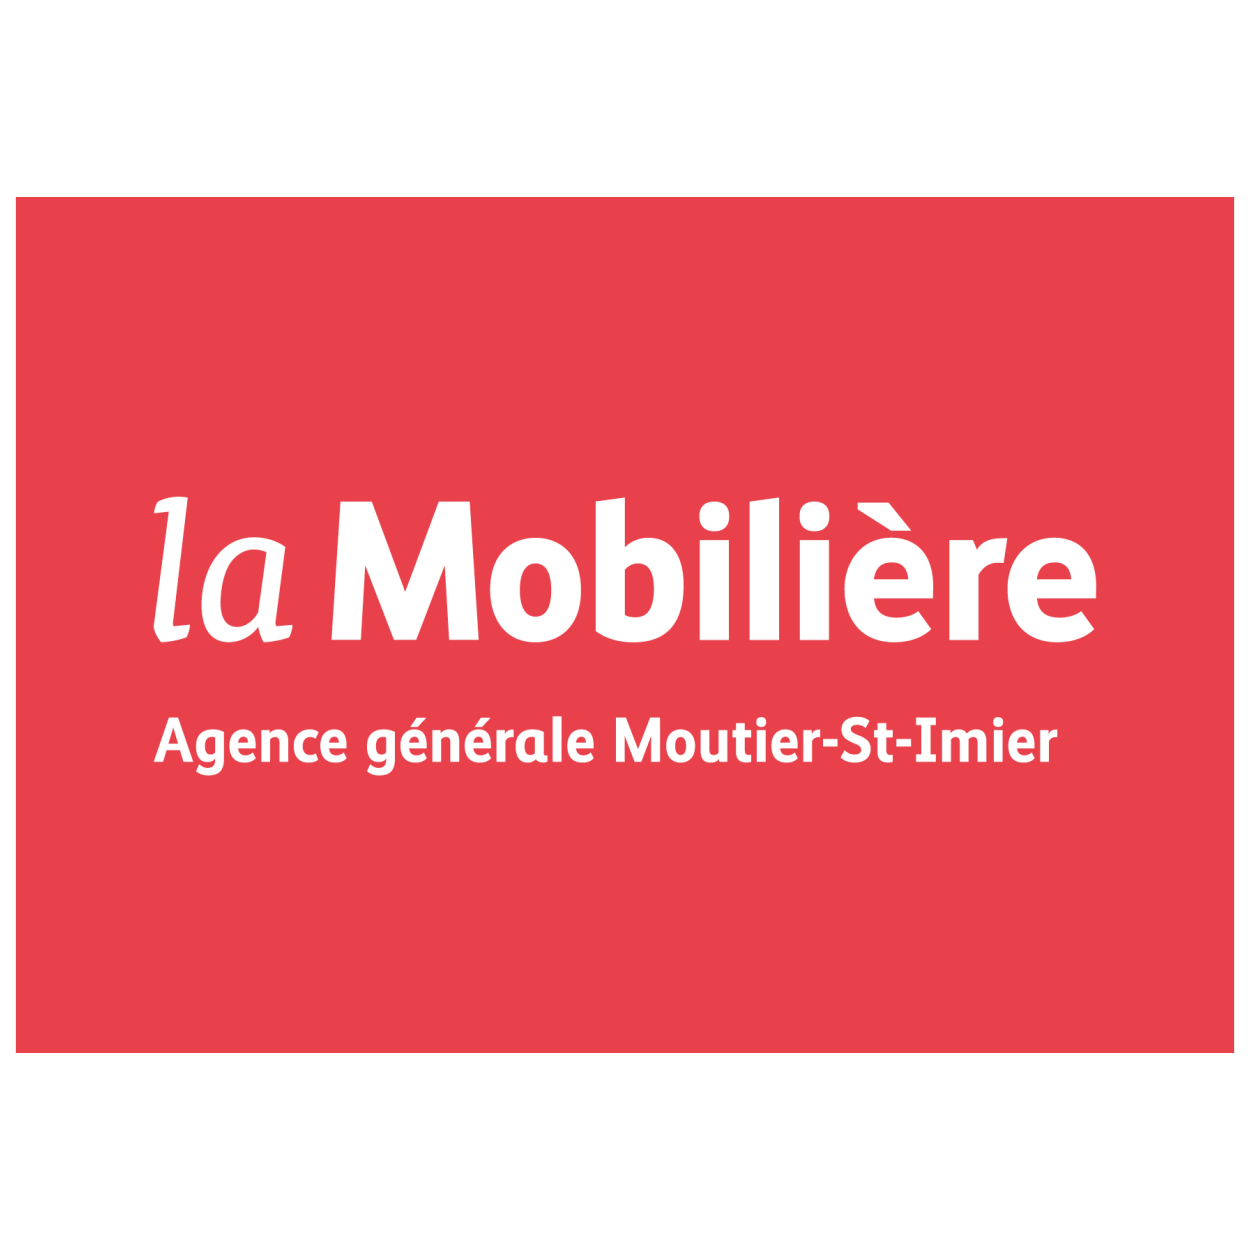 La Mobilière - Agence générale de Moutier - St-Imier